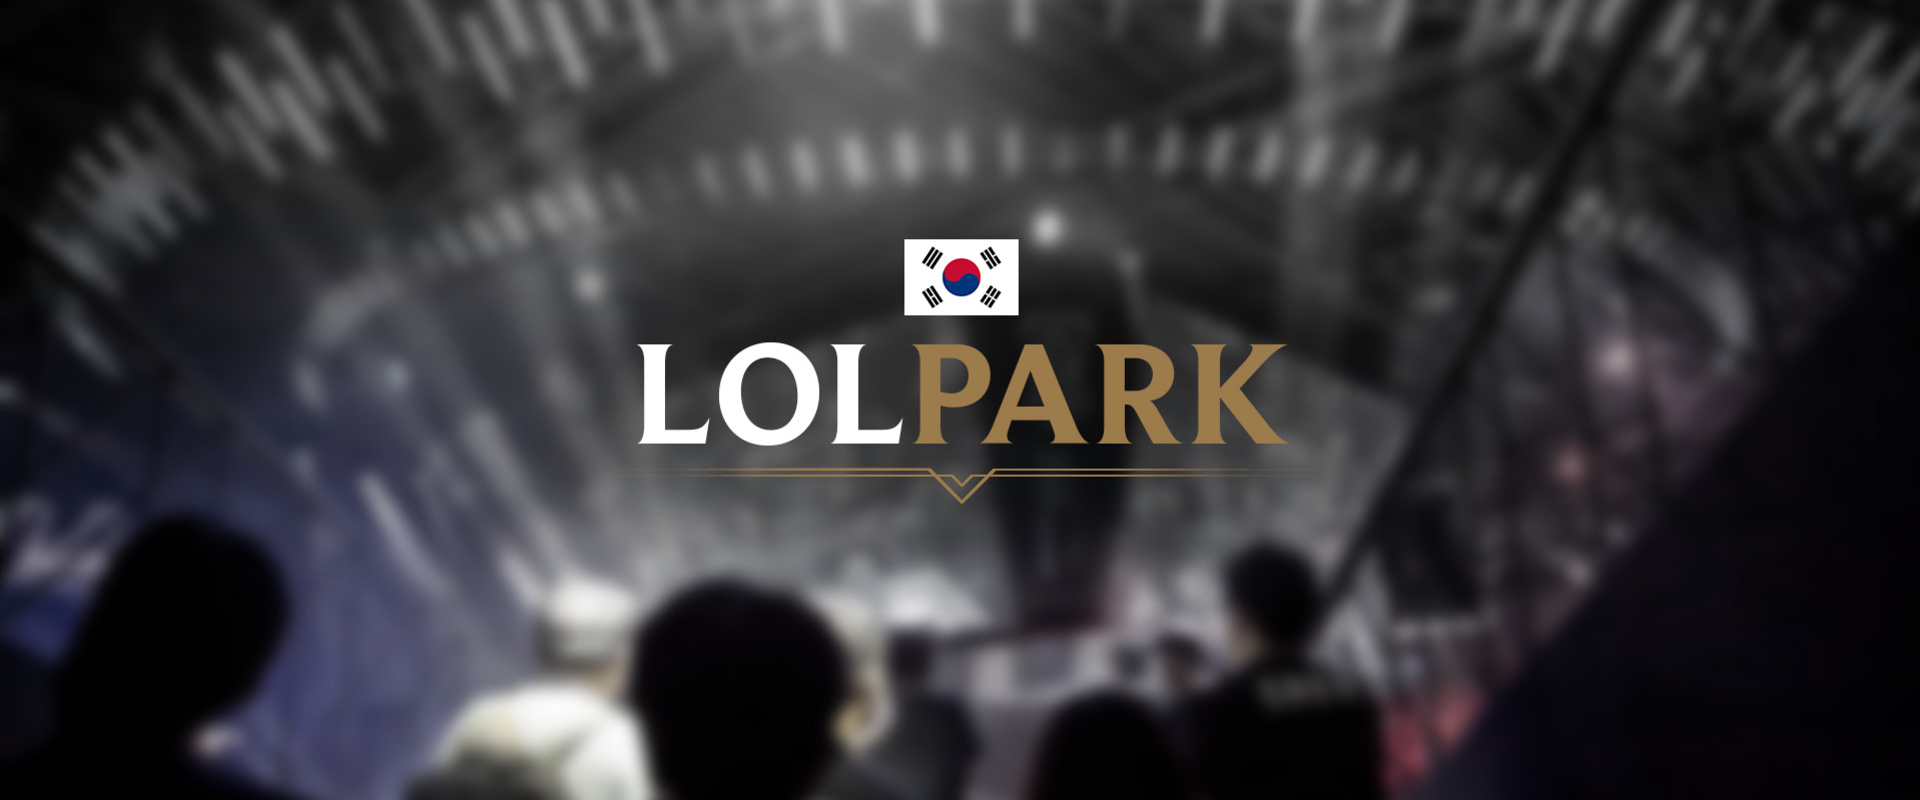 Koreában már saját stadion is dukál a League of Legends-nek!